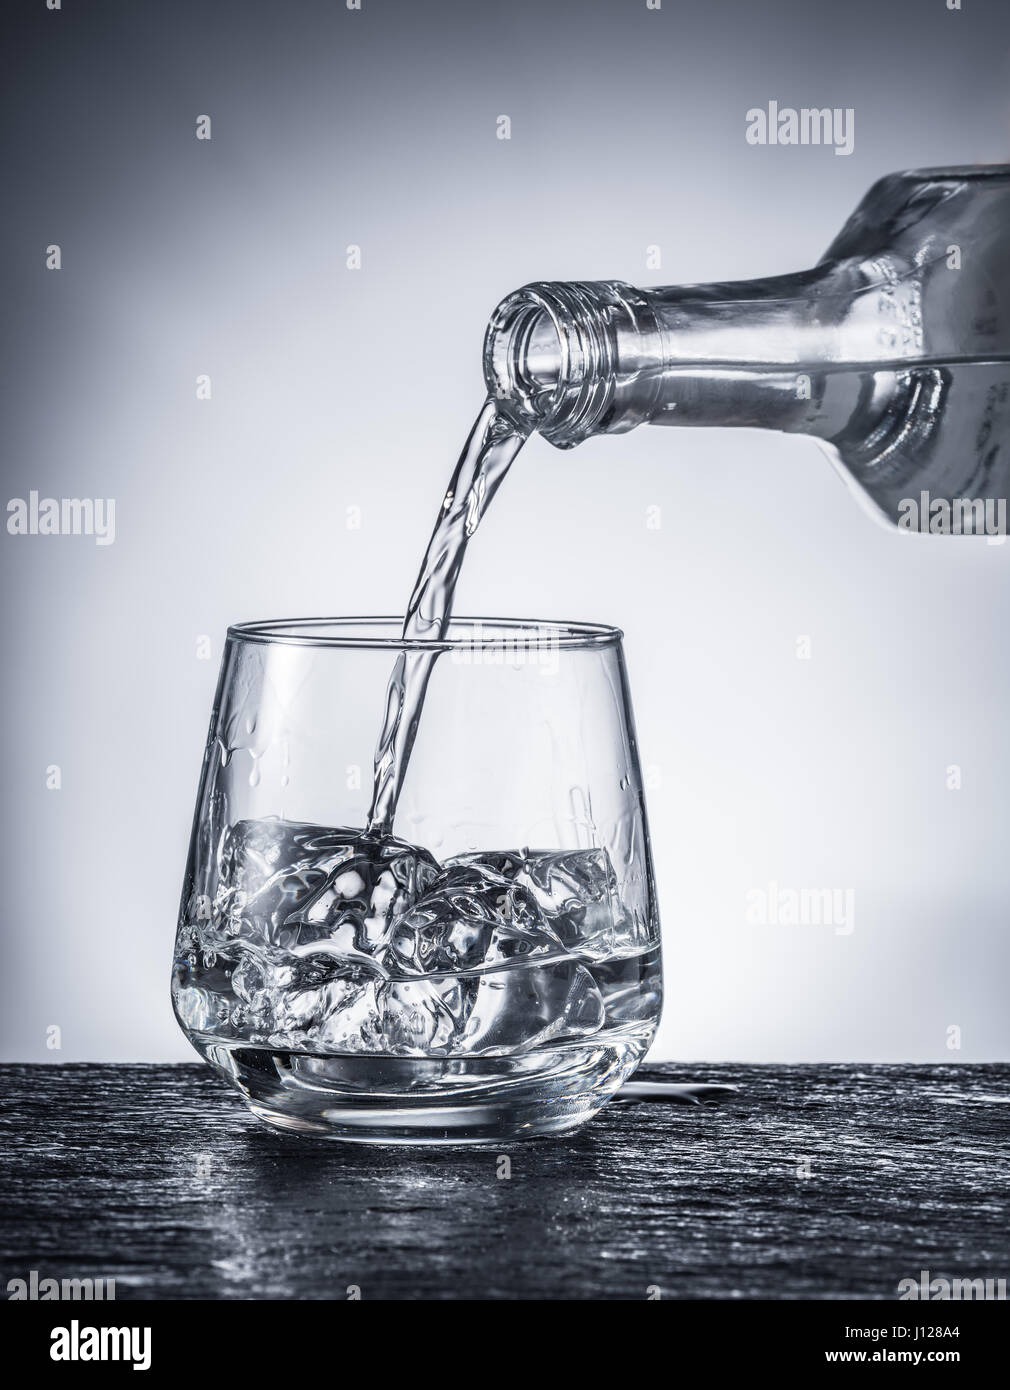 Versando l'alcol in un bicchiere. Immagine monocromatica. Foto Stock